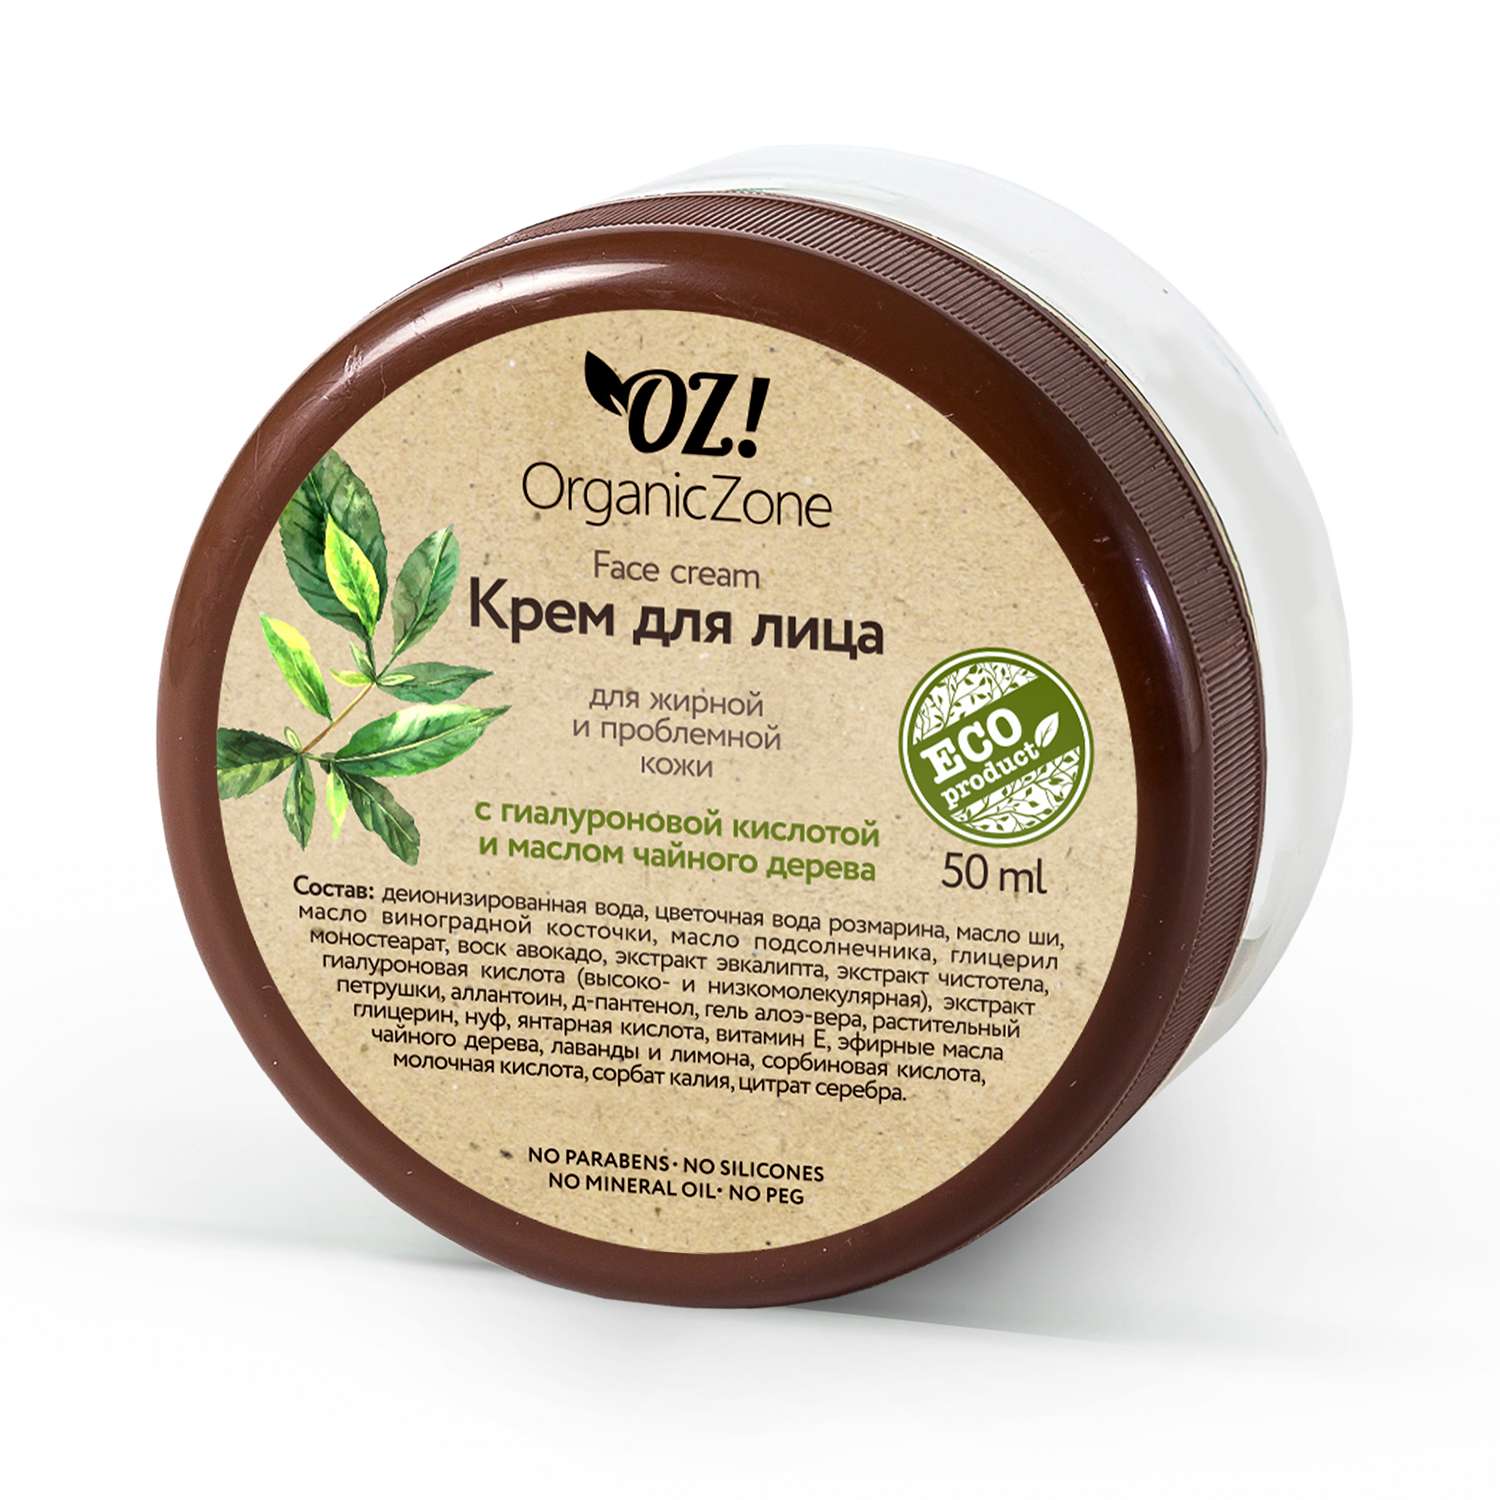 Крем для лица OrganicZone с гиалуроновой кислотой и маслом чайного дерева 50мл - фото 1